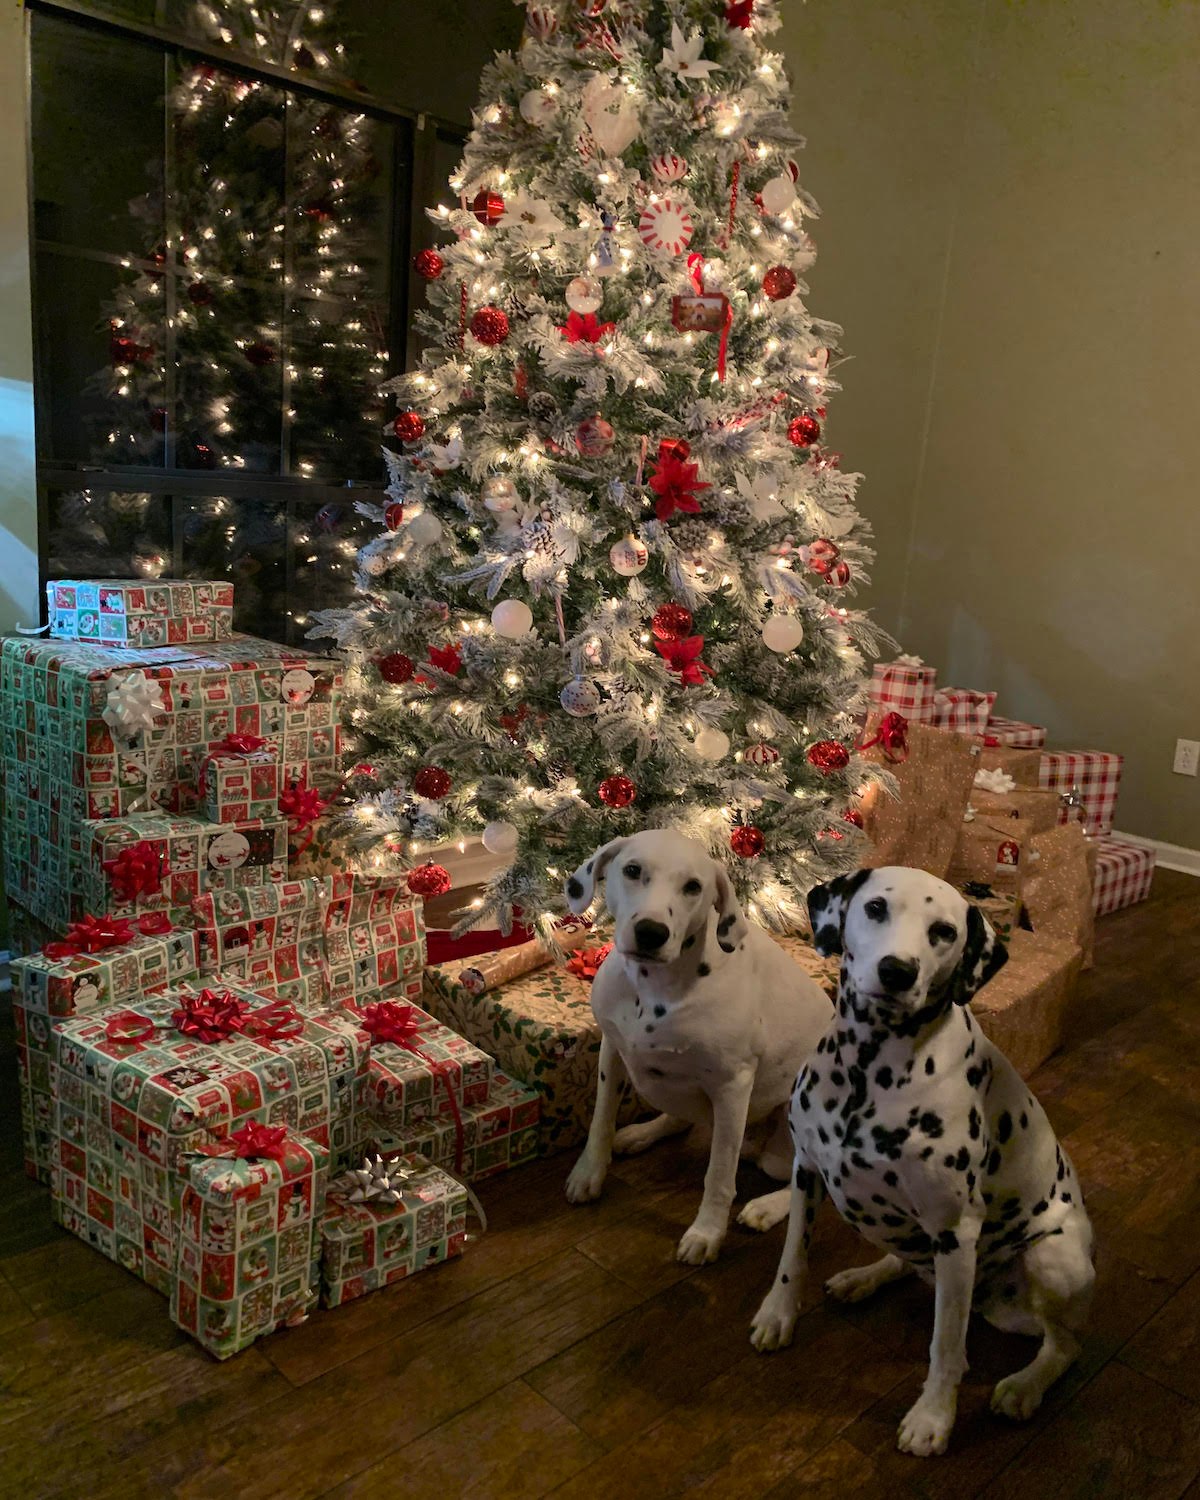 Dog Christmas Present